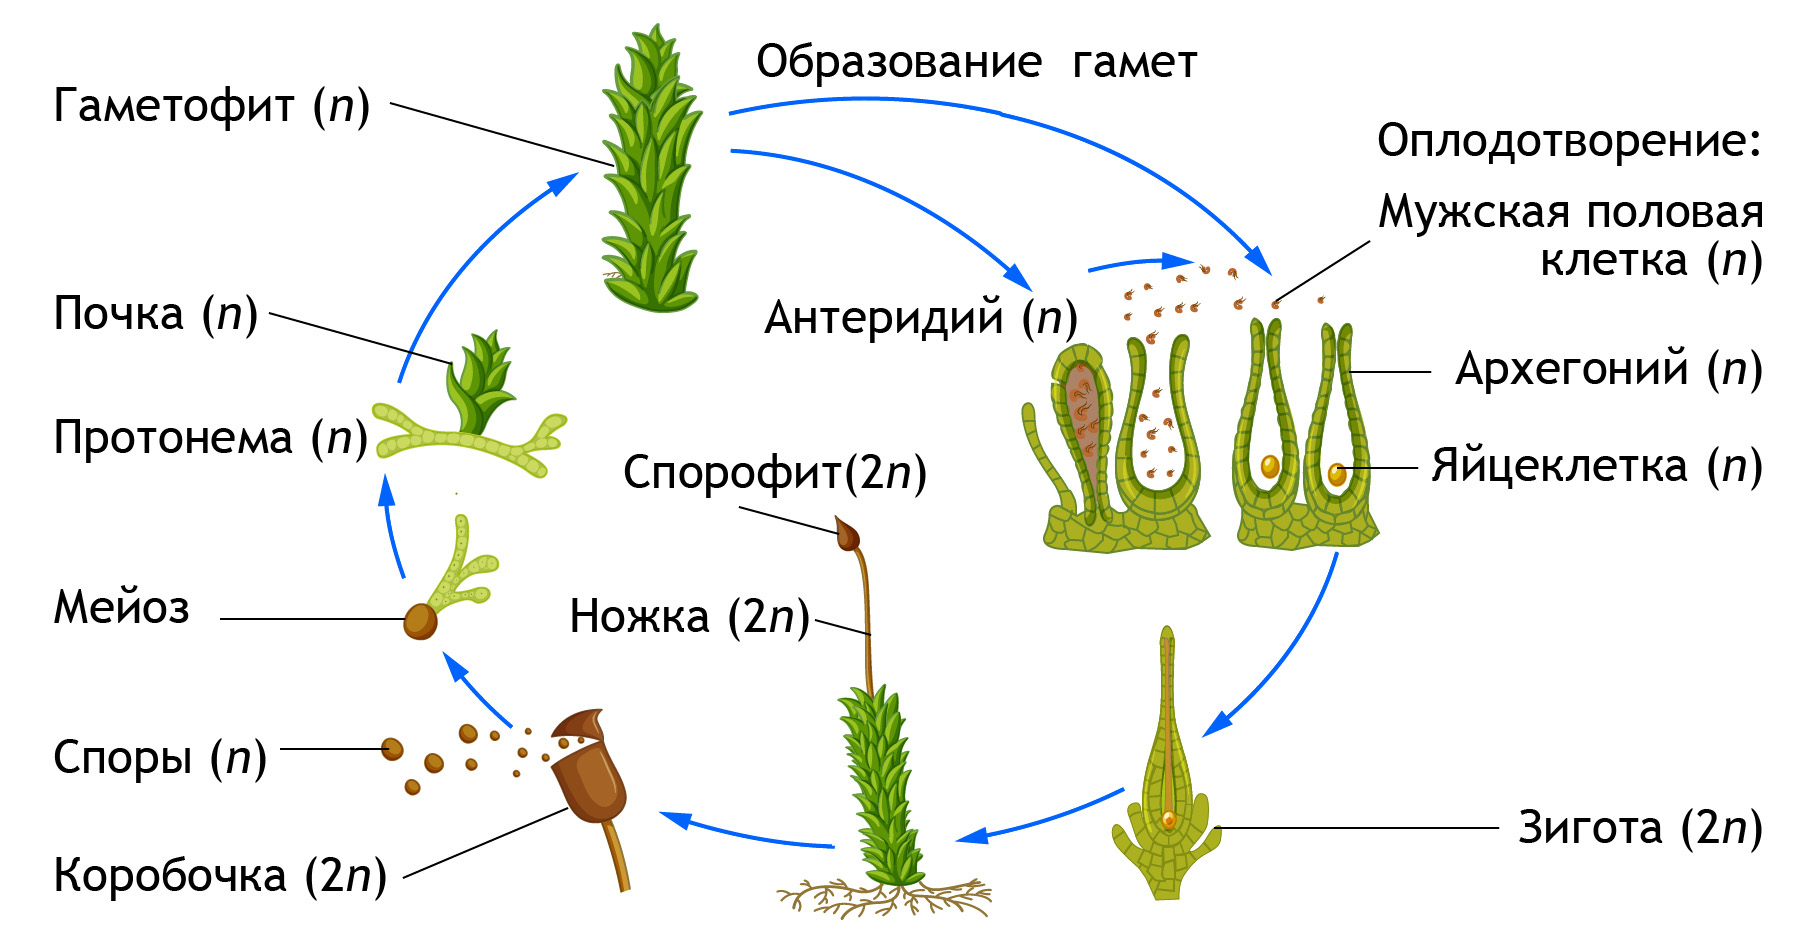 Гаметофит зеленых водорослей чем представлен. Кукушкин лен жизненный цикл. Размножение мха Кукушкин лен. Цикл развития мха Кукушкина льна. Размножение мха Кукушкин лен схема.